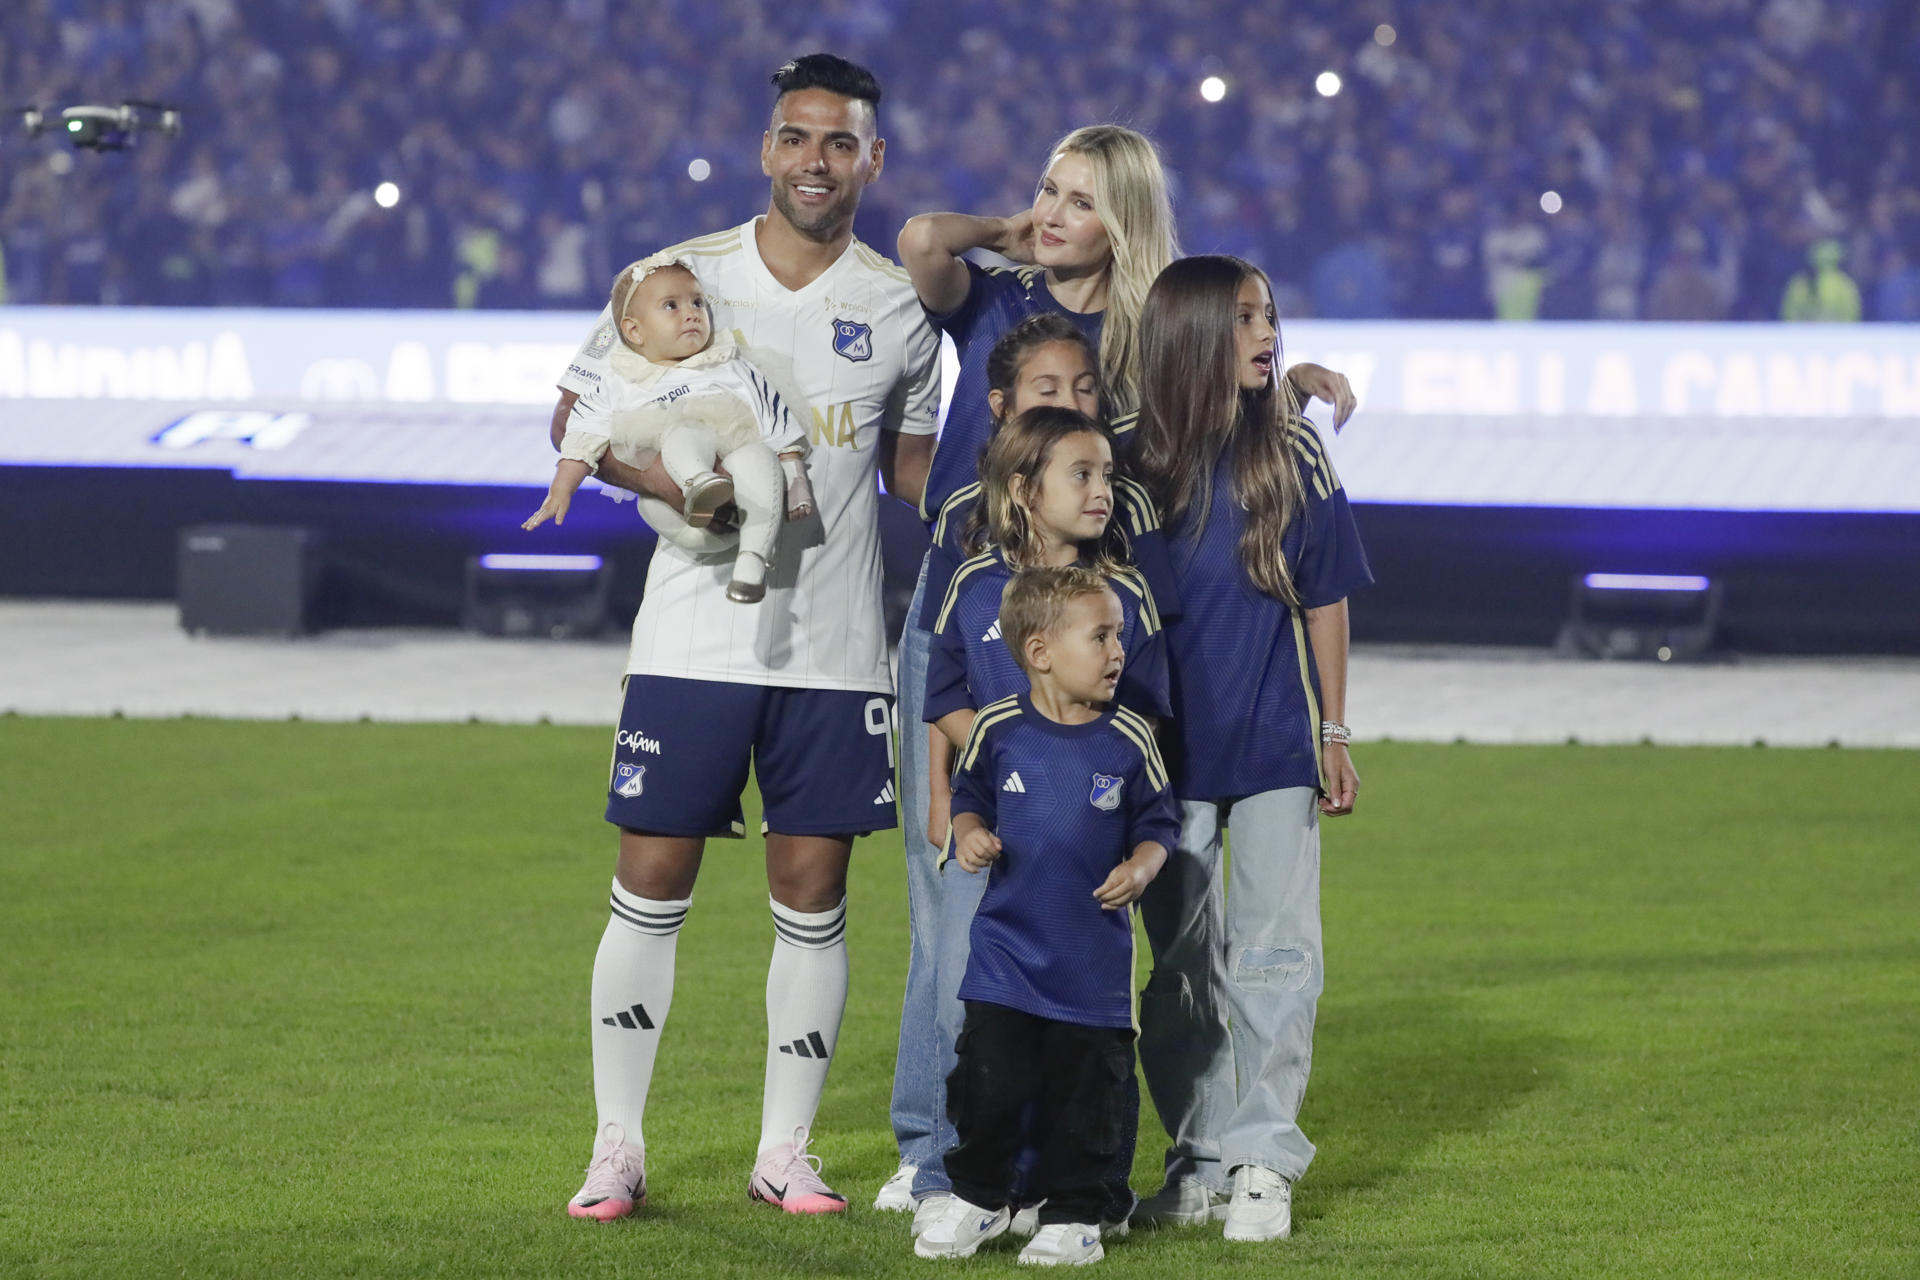 El delantero colombiano Radamel Falcao García (2d) fue registrado este martes, 16 de julio, al posar con su familia, durante su presentación como nuevo futbolista del club bogotano de fútbol Millonarios, en el estadio Nemesio Campín de Bogotá (Colombia). EFE/Carlos Ortega